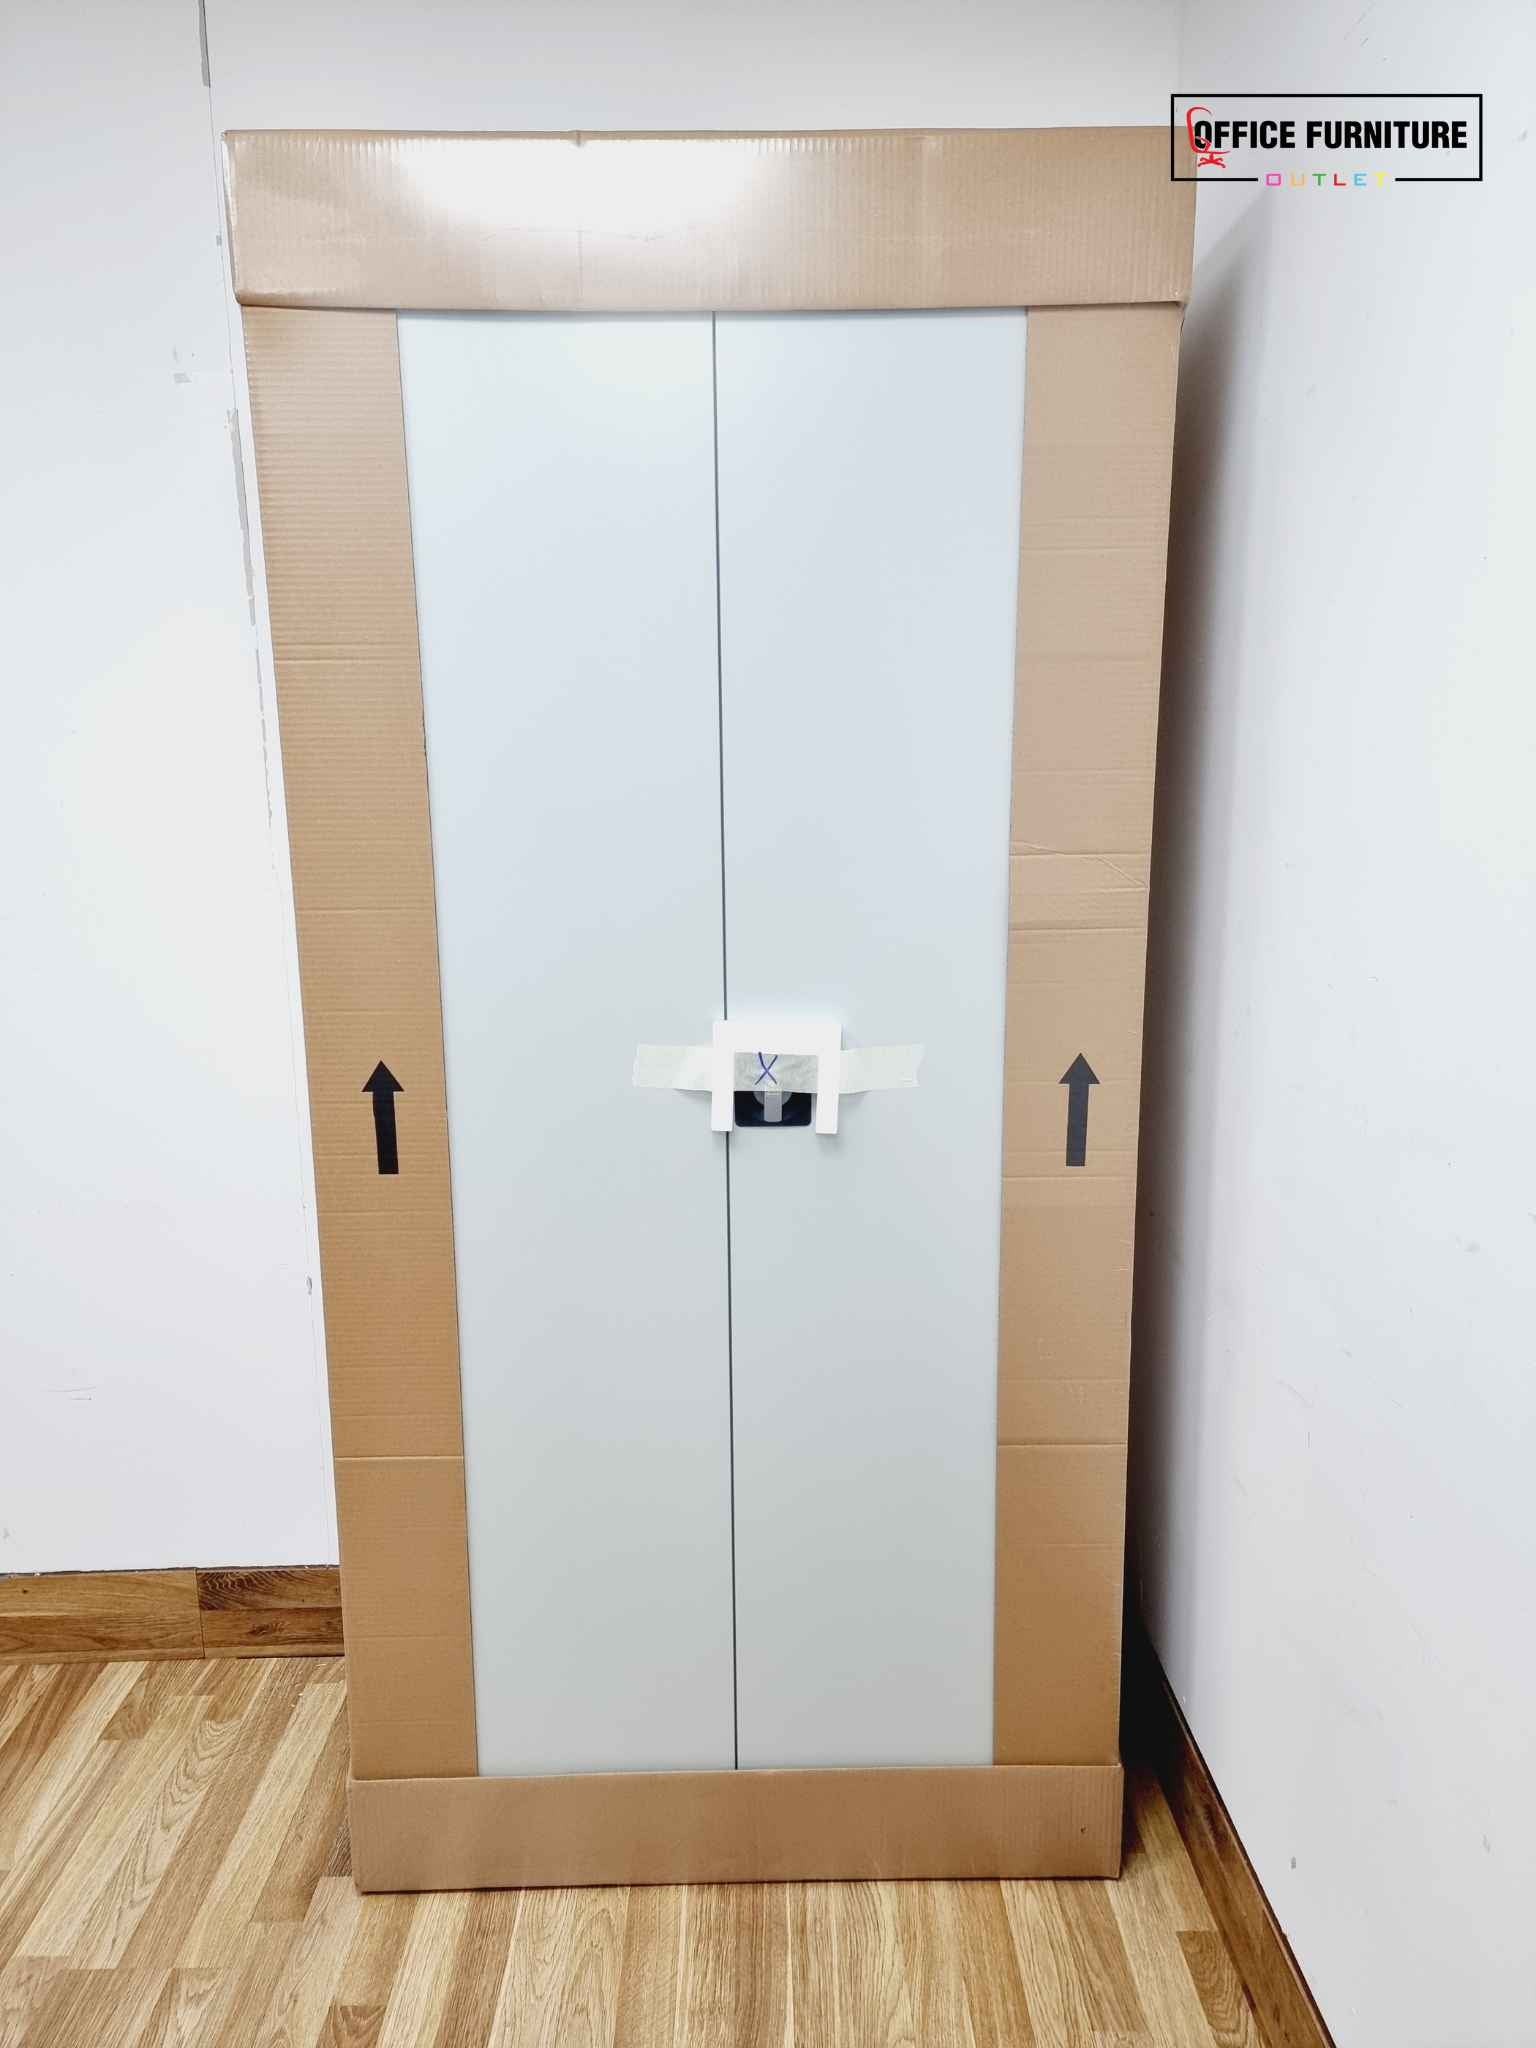 Brand New Double Door Tall Metal Storage Cabinet